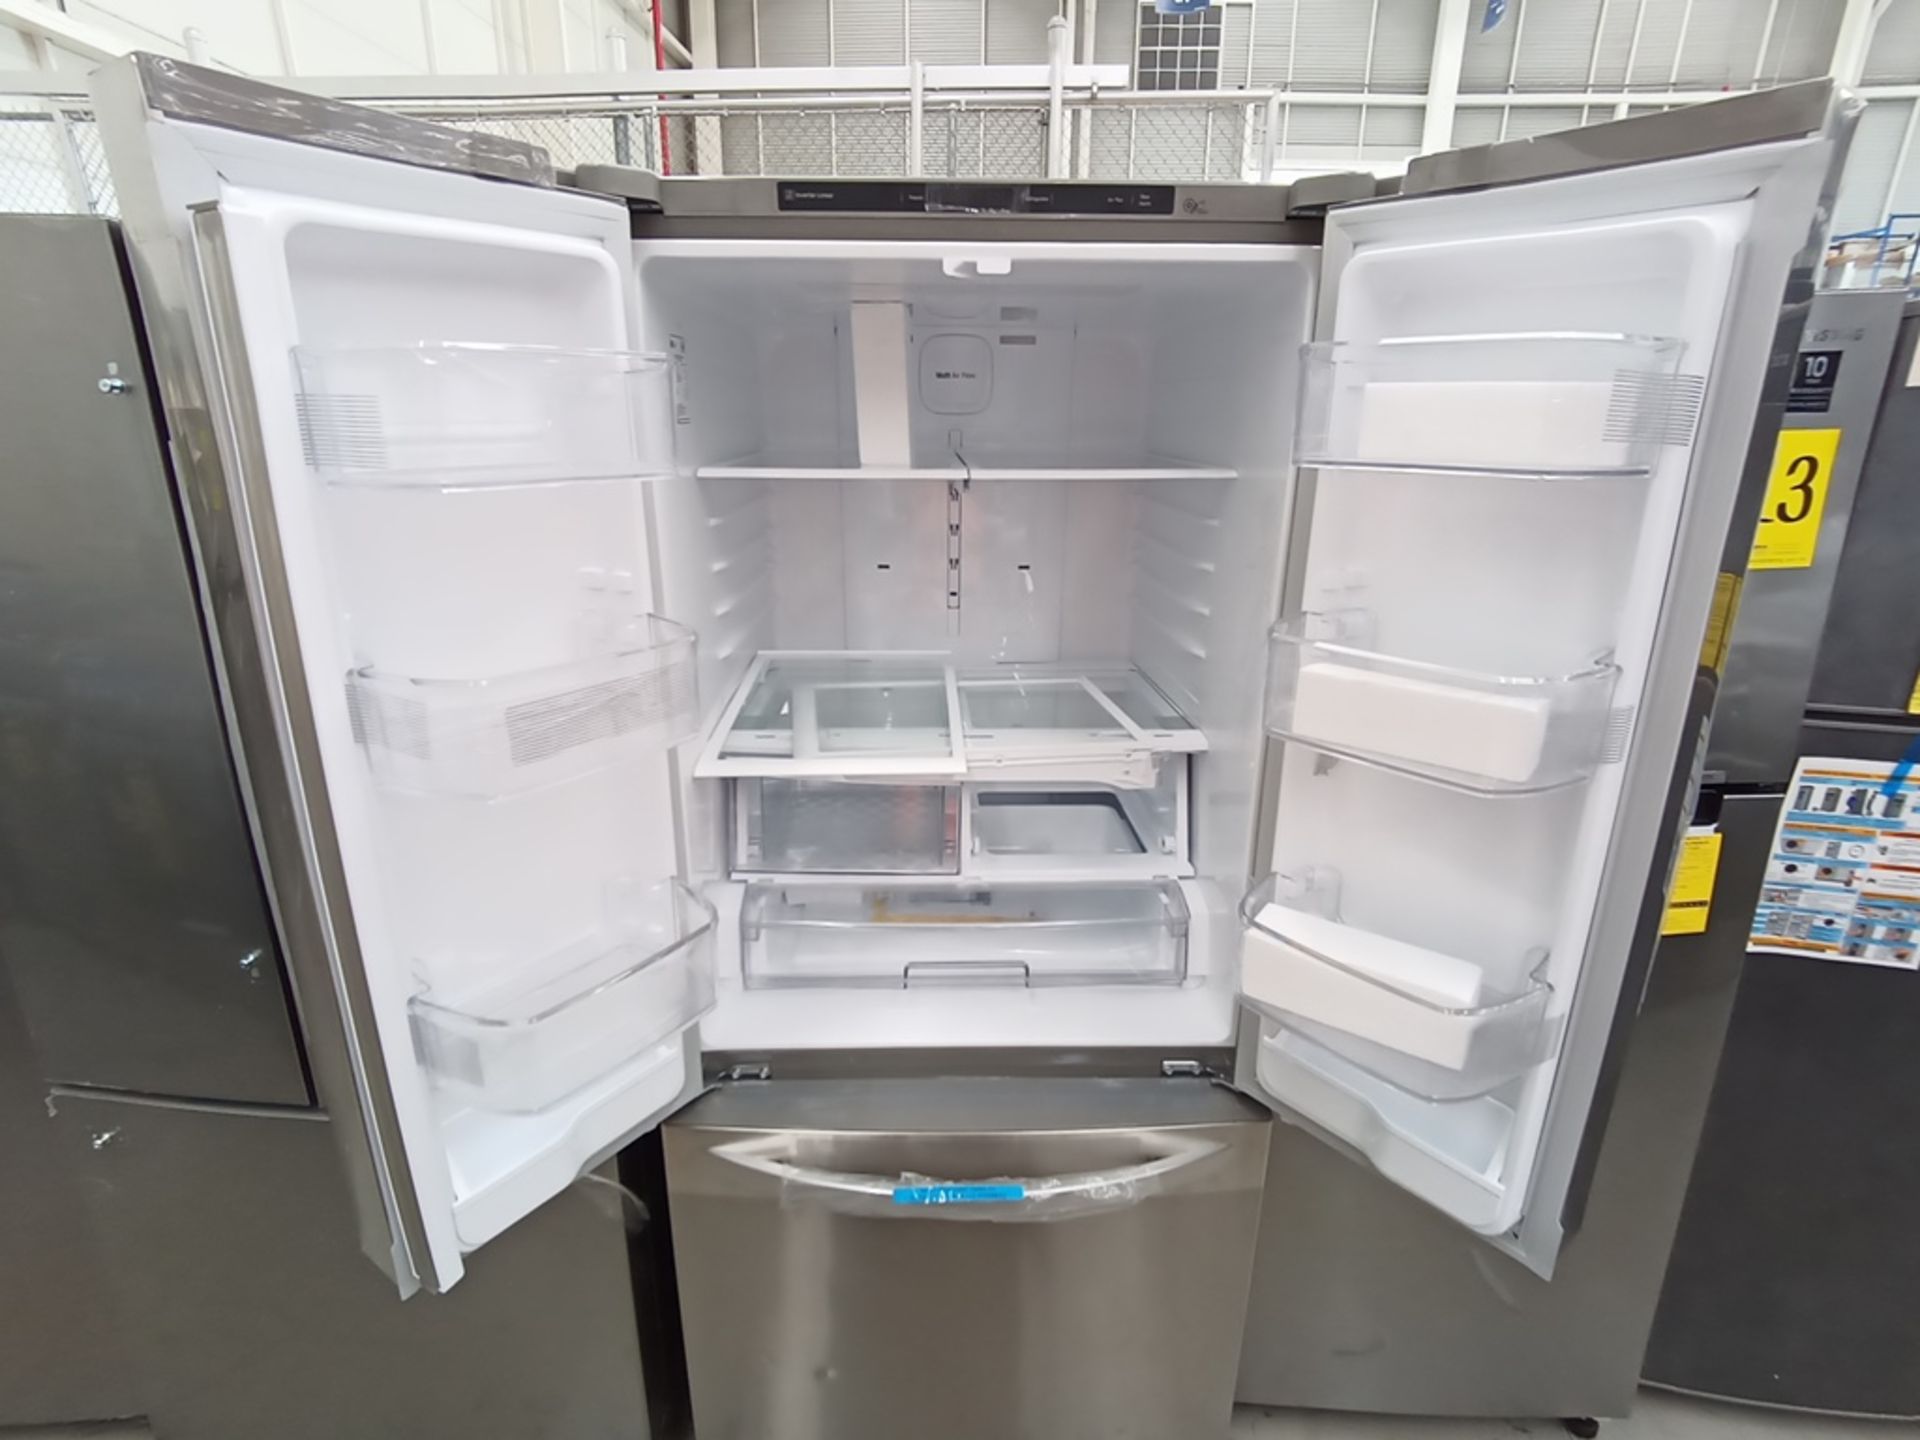 Lote de 2 refrigeradores contiene: 1 Refrigerador Marca LG, Modelo GF22BGSK, Serie 107MRMD4S595, Co - Image 8 of 16